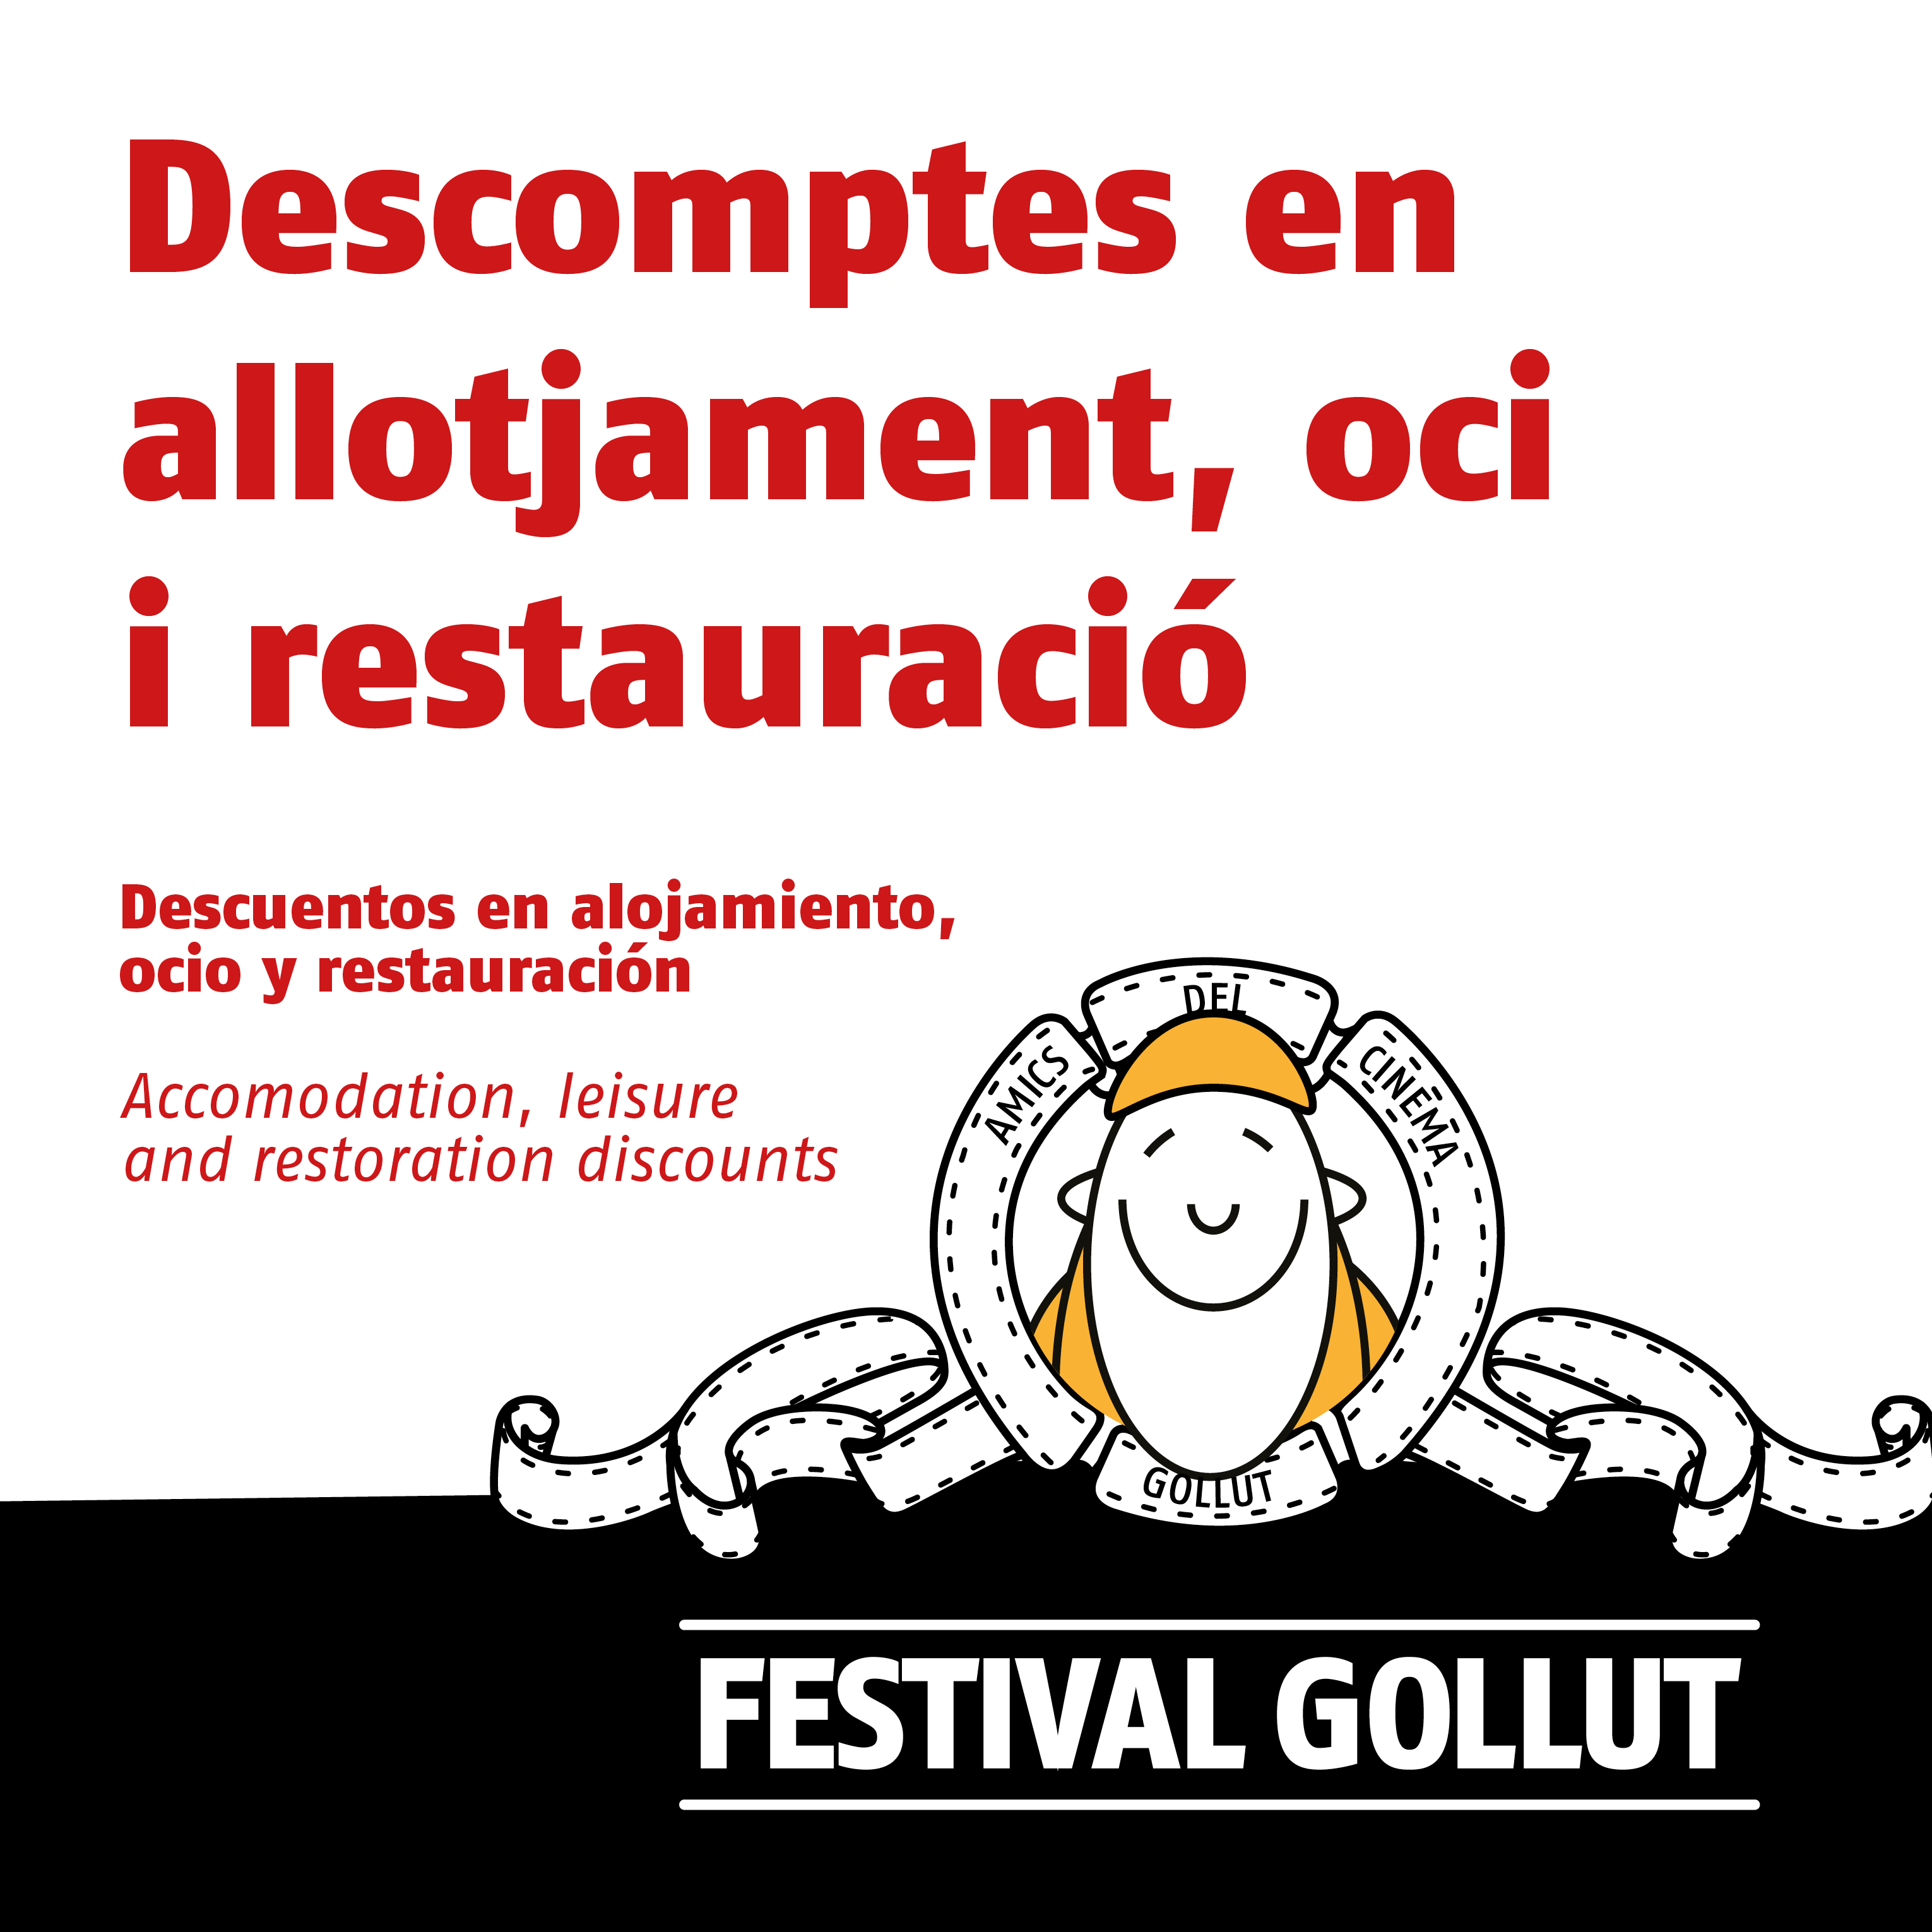 Descomptes 6 Festival Gollut 2019 web